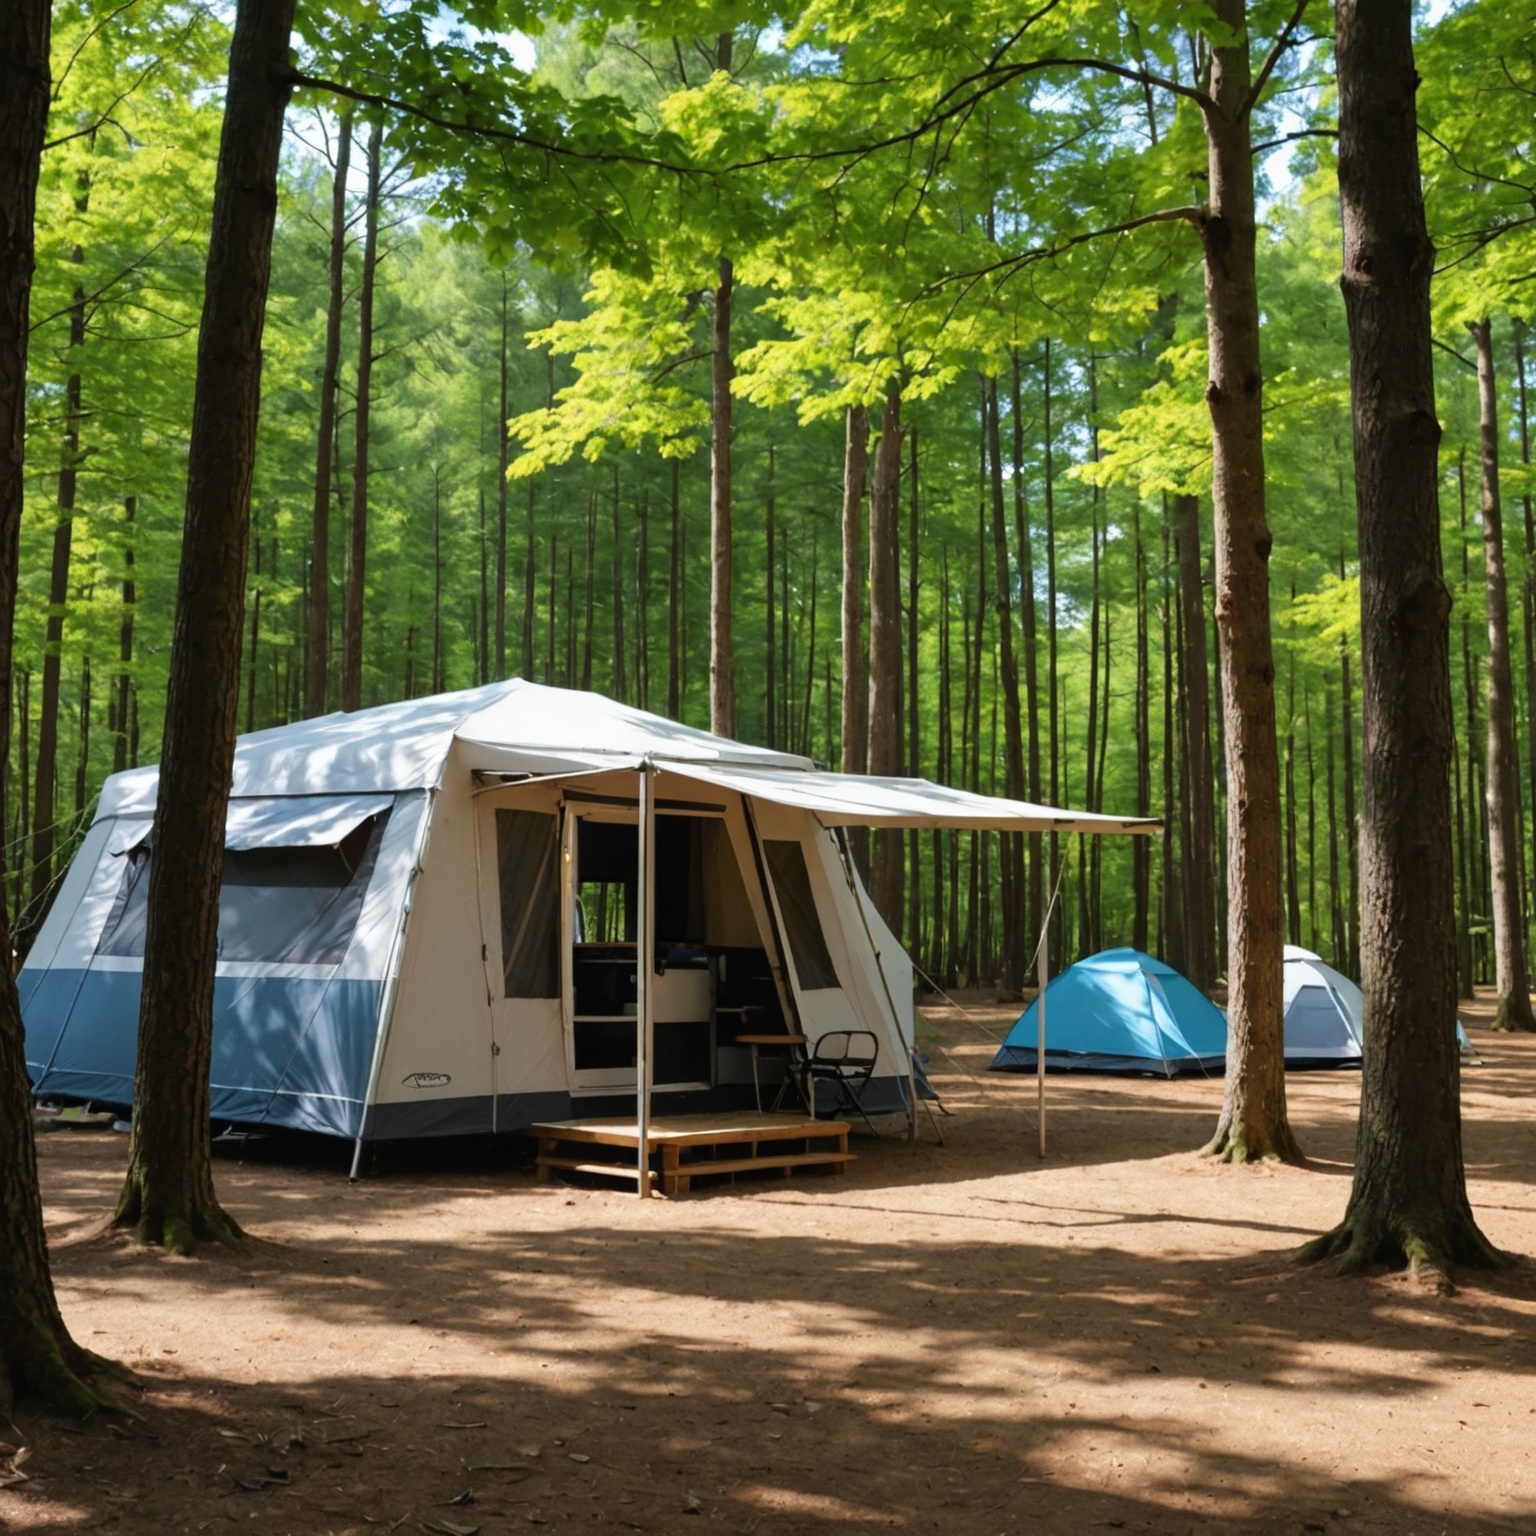 Descubre las Mejores Opciones de Campings Económicos en las Landas: Calidad y Confort a Precios Accesibles